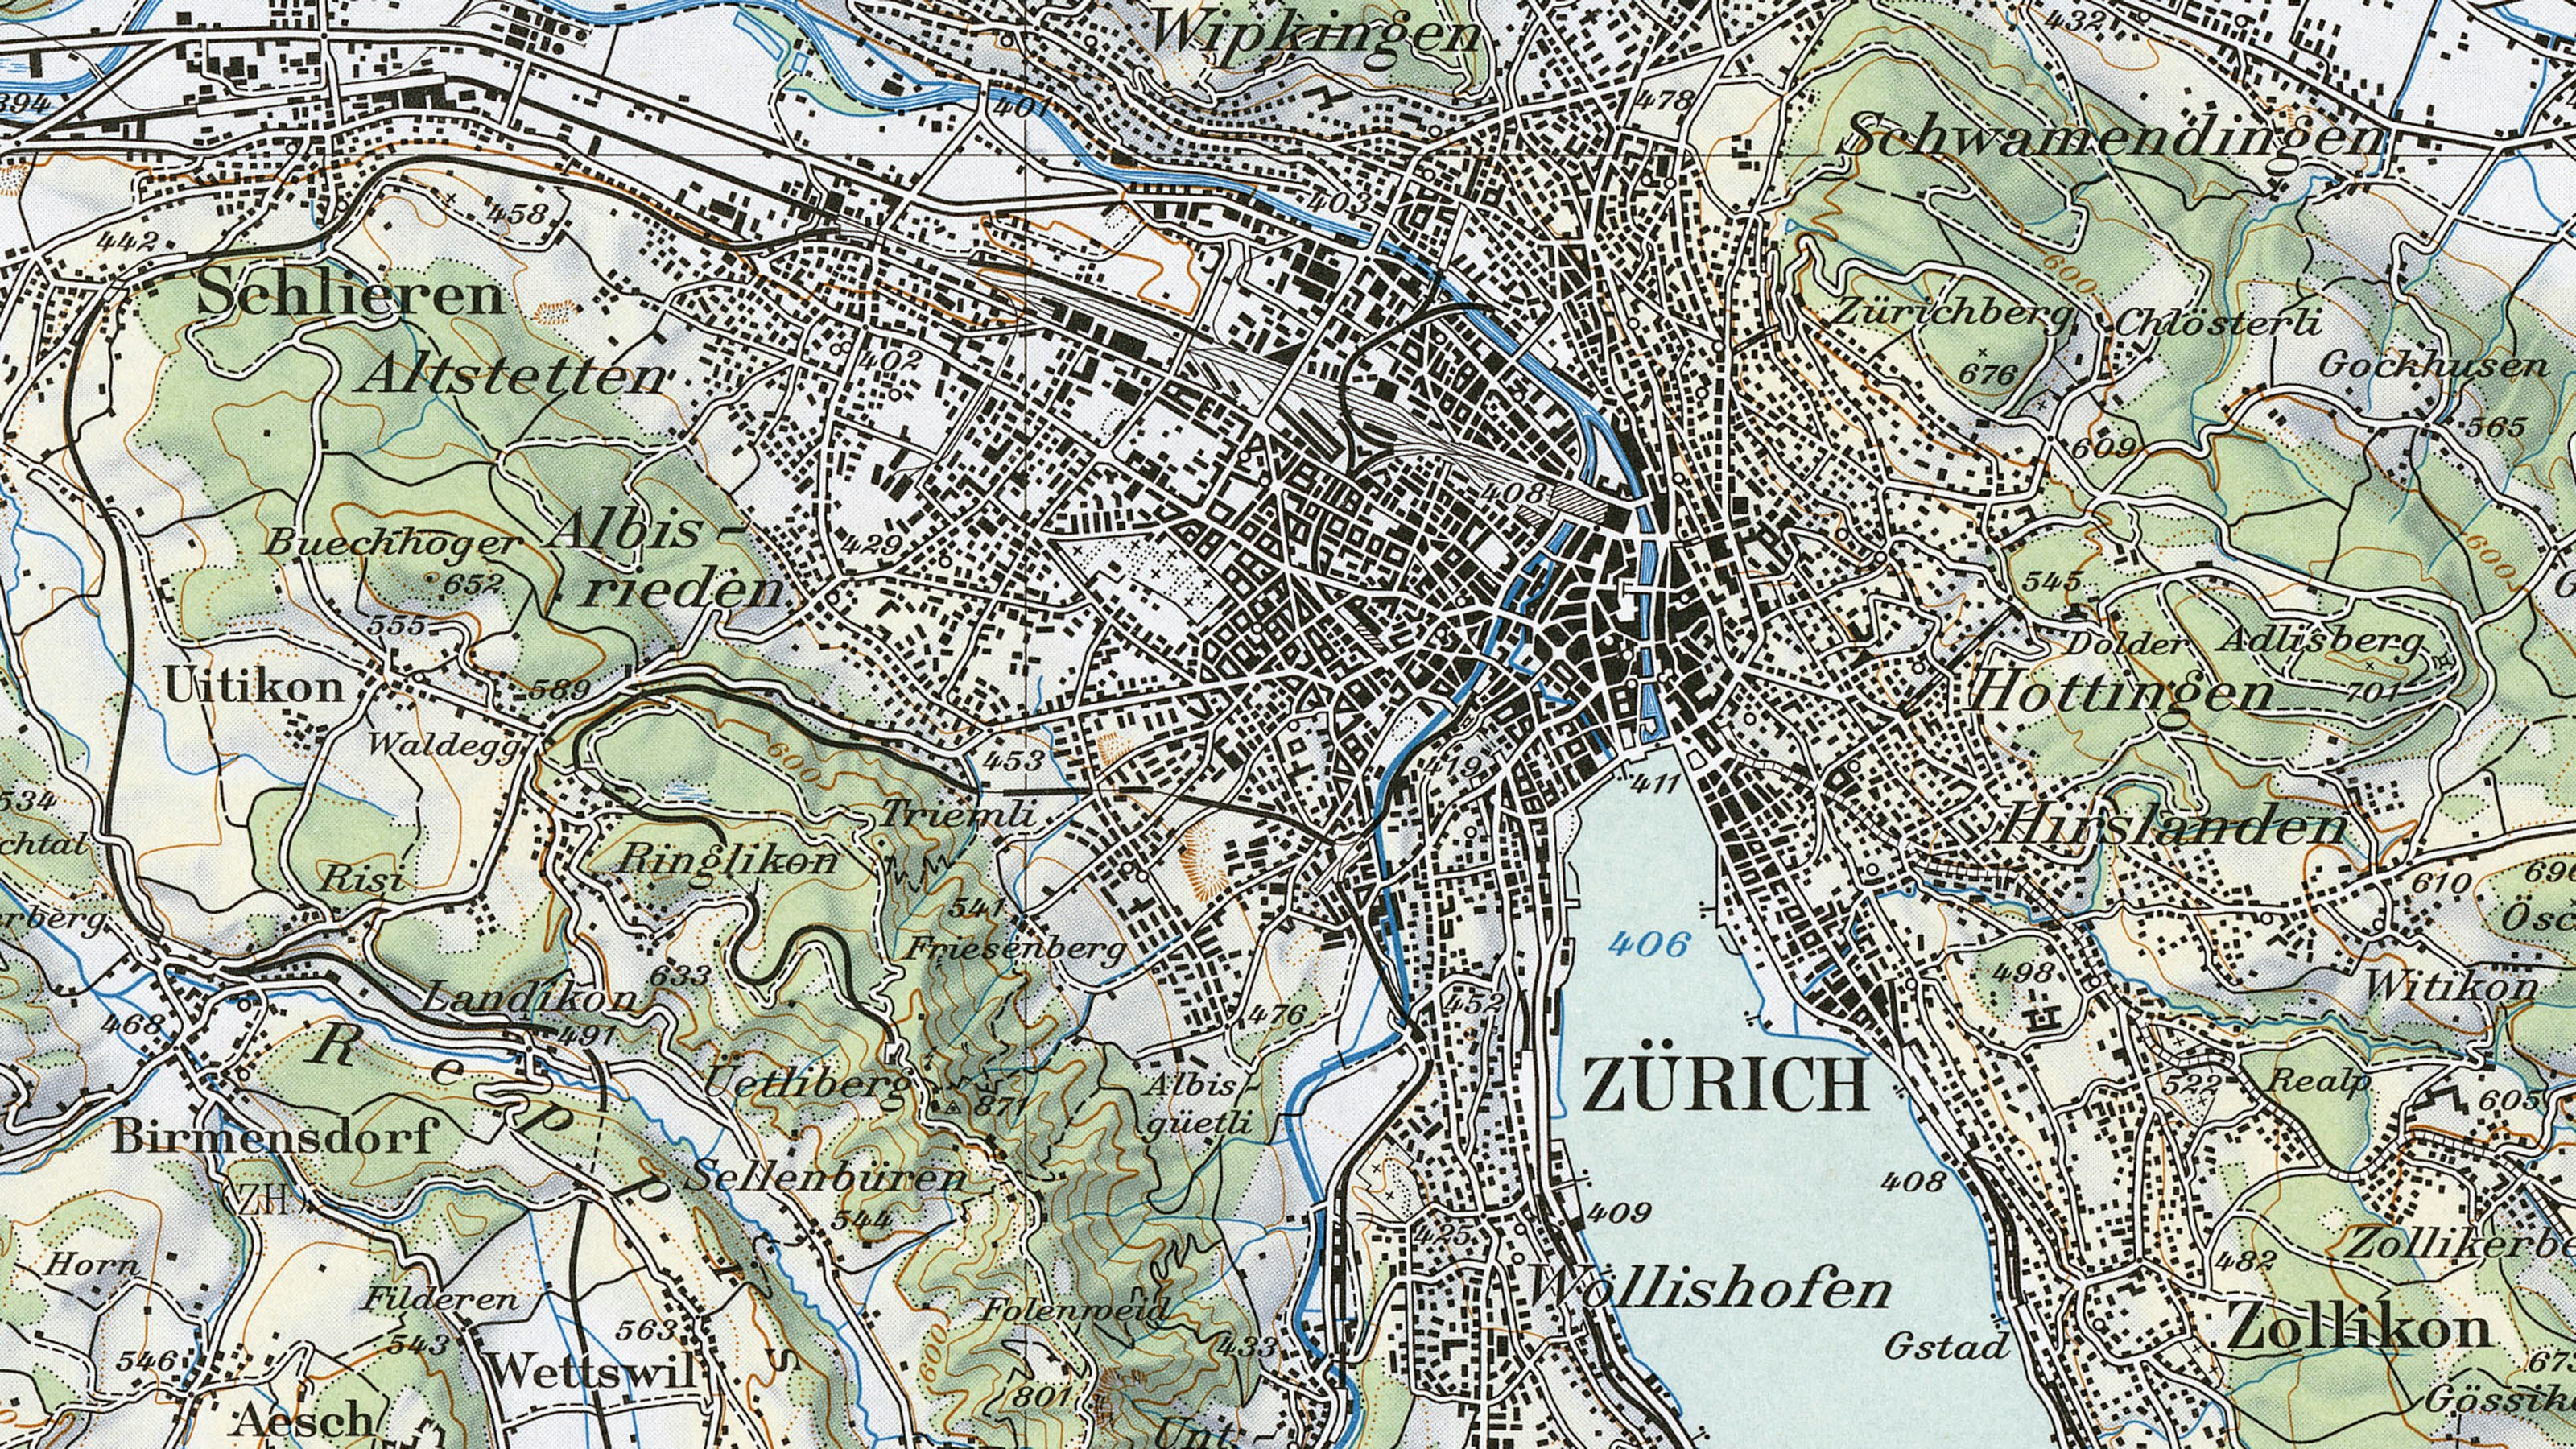 Ausschnitt der Landeskarte im Massstab 1:100 000 aus dem Jahr 1959. Der Ausschnitt zeigt das Zentrum Zürichs auf der mehrfarbigen Karte.